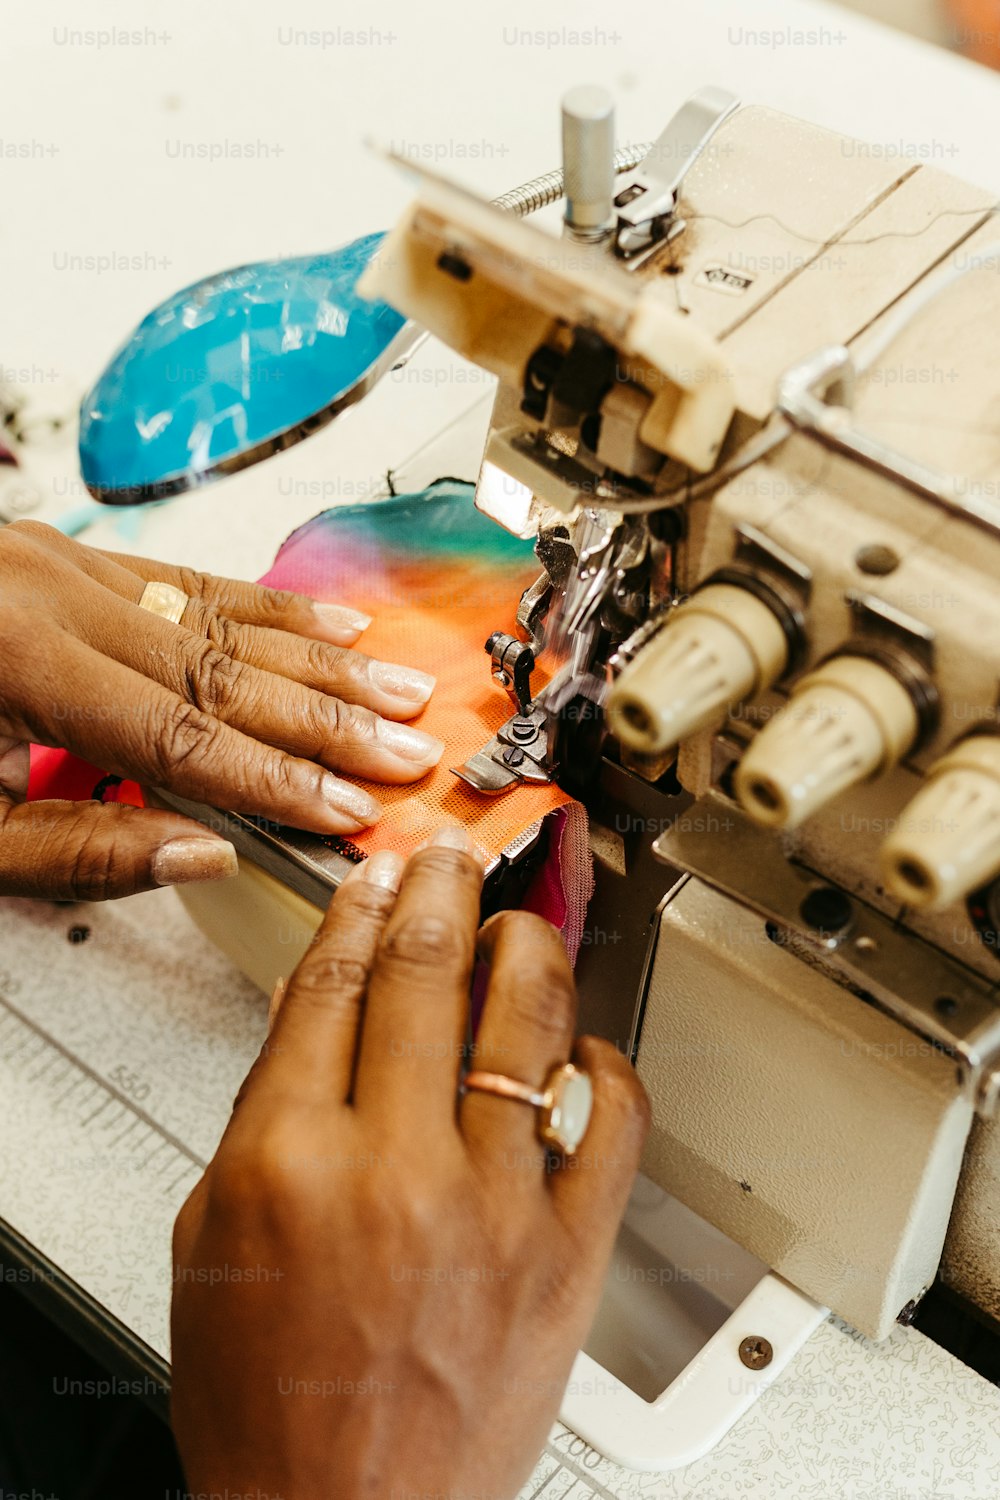 Una mujer está usando una máquina de coser para coser un trozo de tela